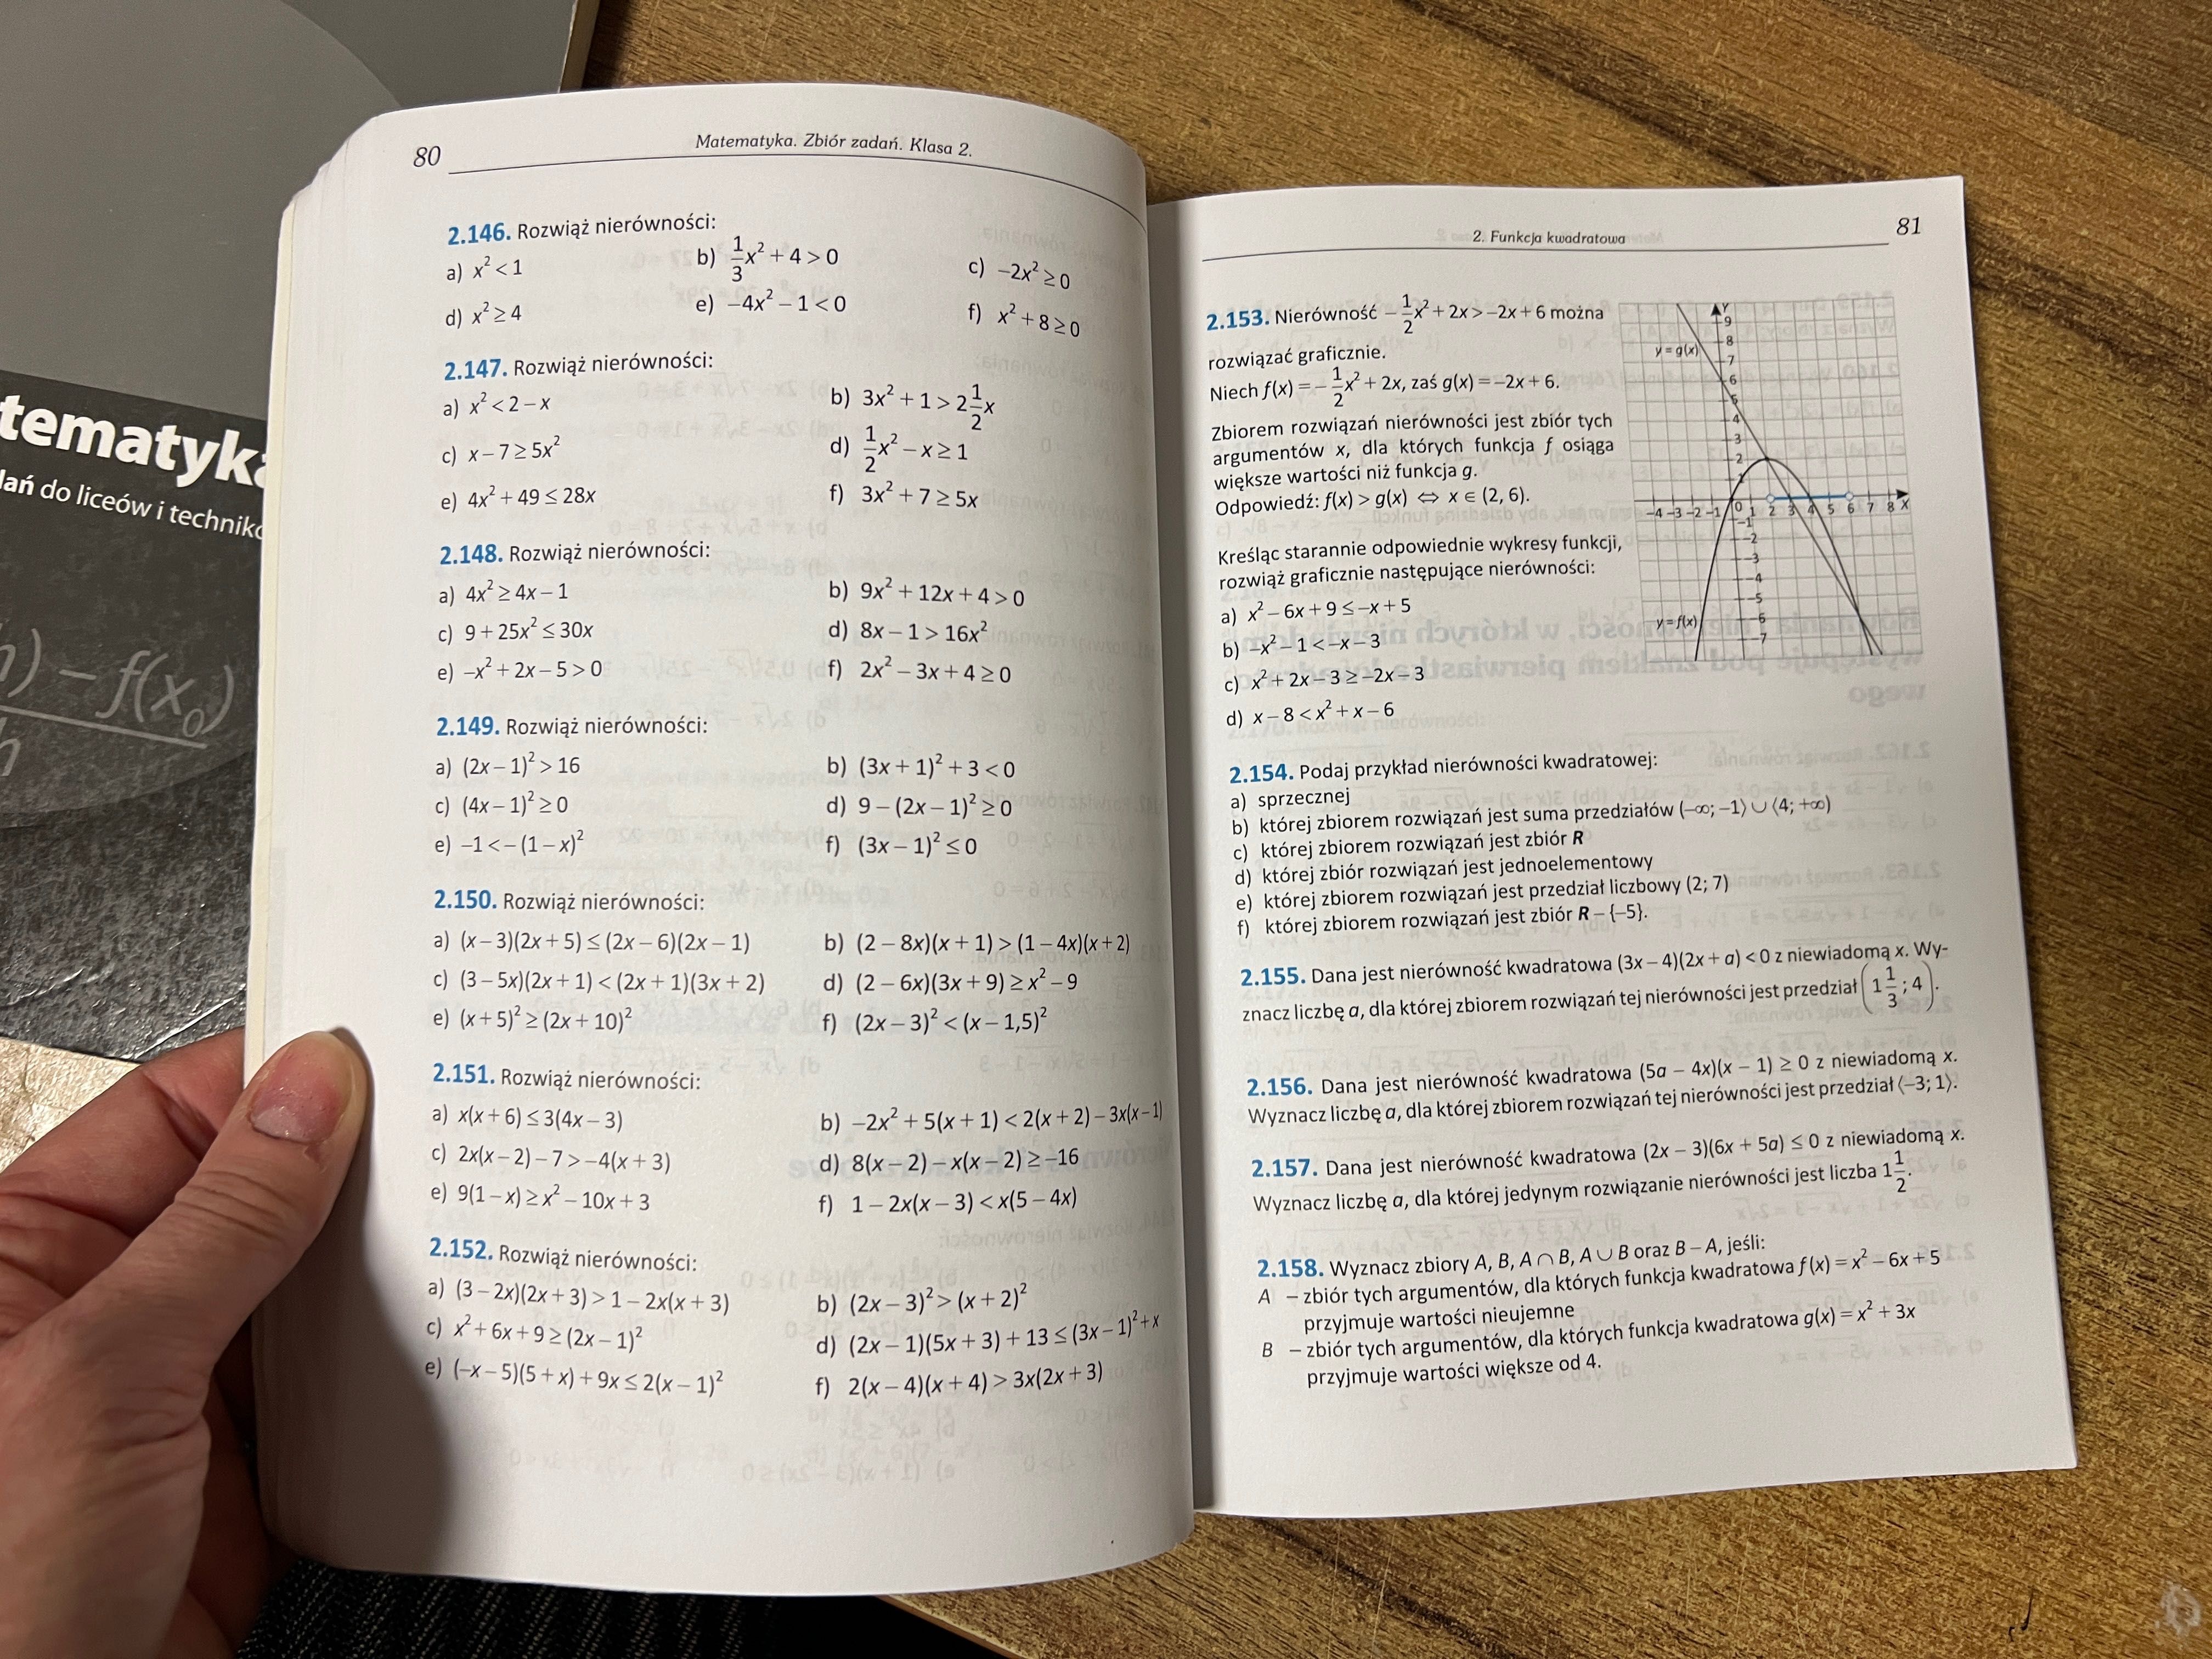 Matematyka podręcznik i zbiór dla liceum i technikum zadań kl.2 kpl.